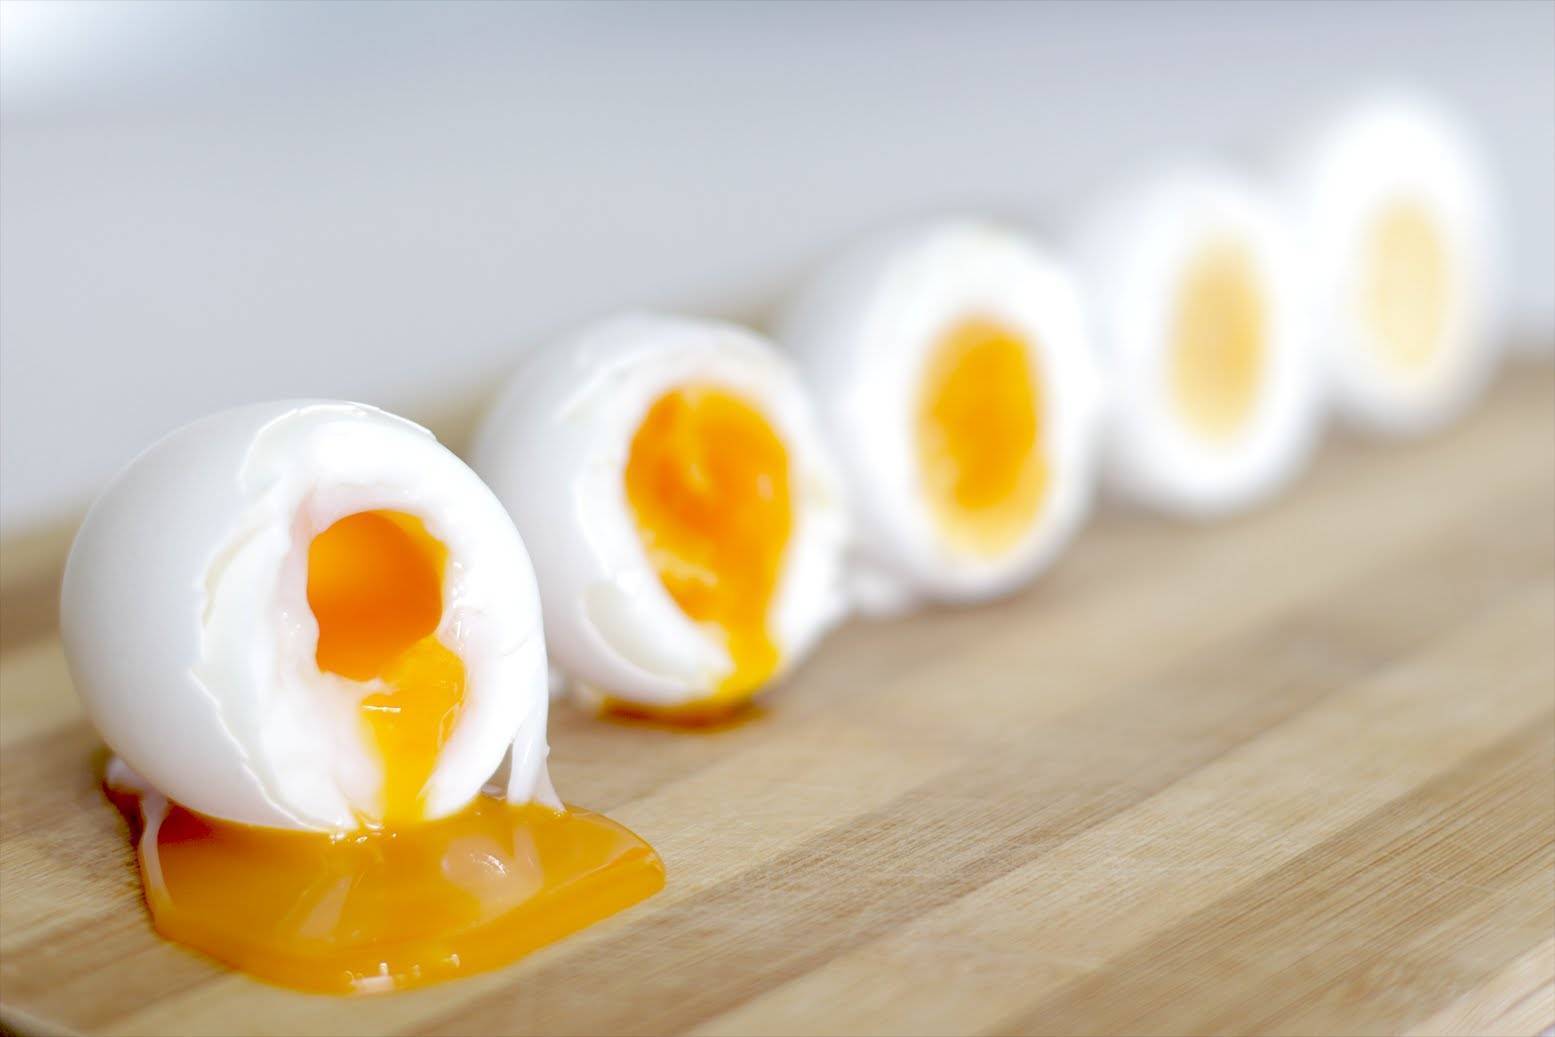 Когда детям можно давать перепелиные яйца и сколько их варить